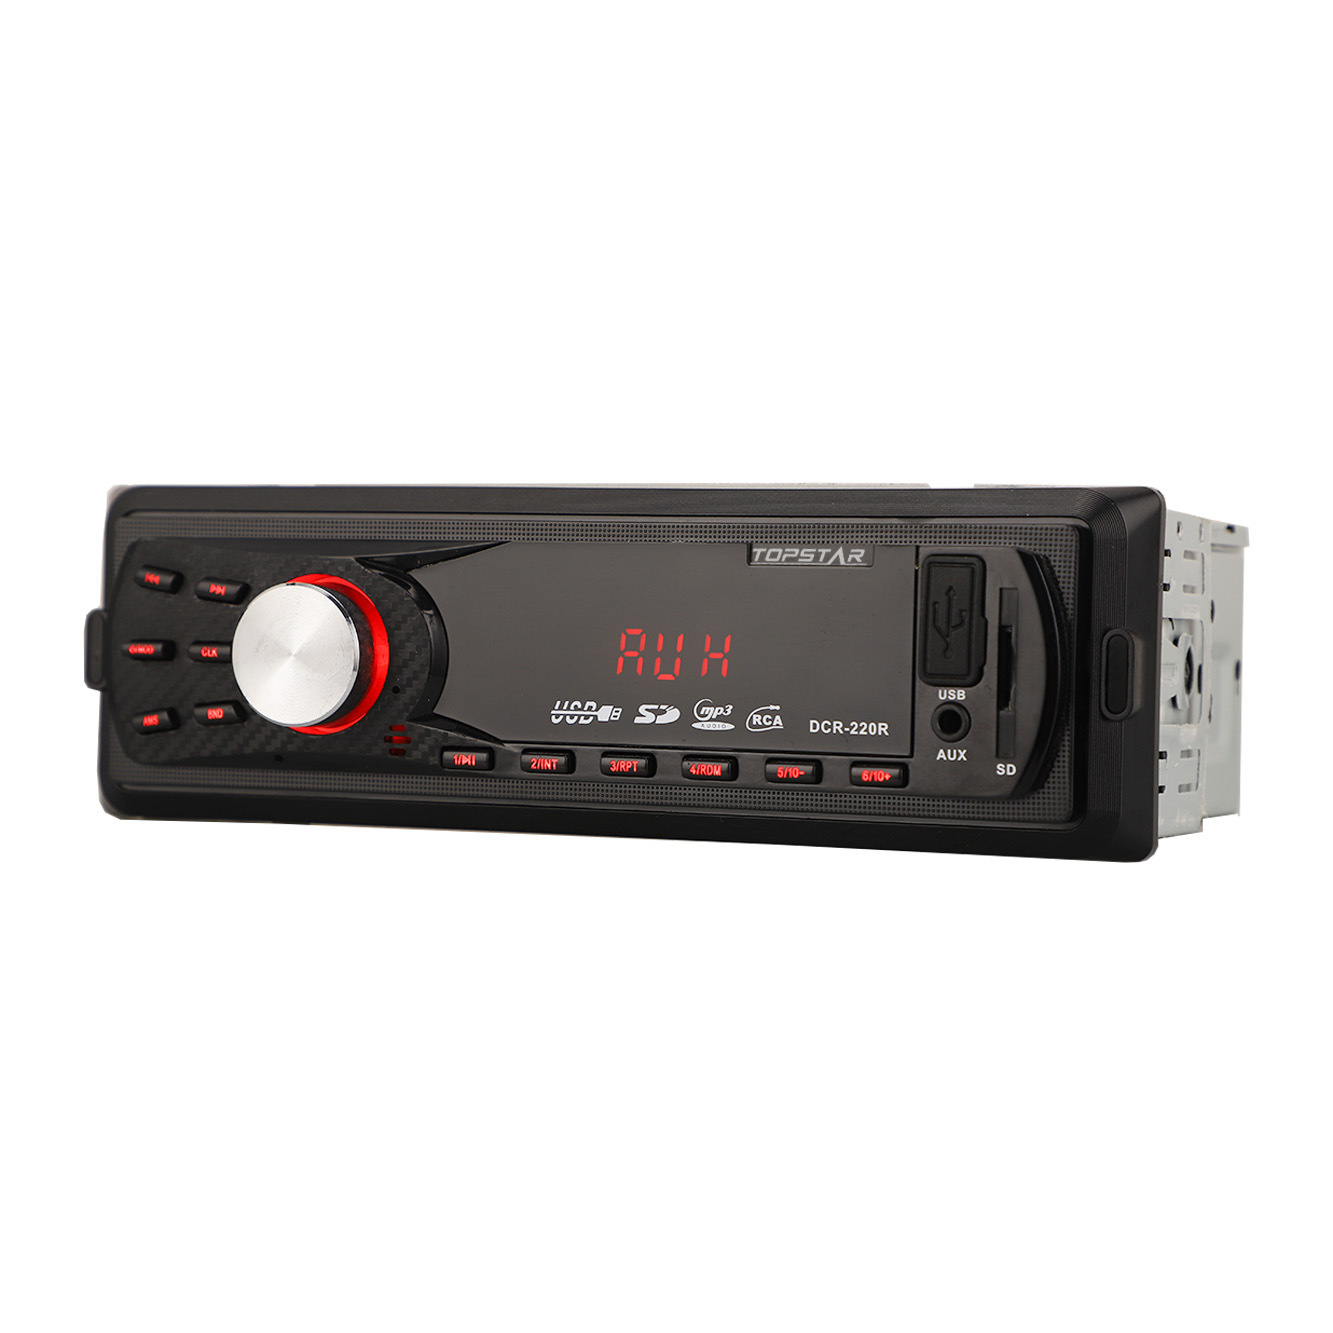 FM-передатчик аудио авто аудио автомобильная стереосистема автомобильная аудиосистема автомобильные аксессуары одиночный DIN автомобильный MP3-плеер USB-плеер